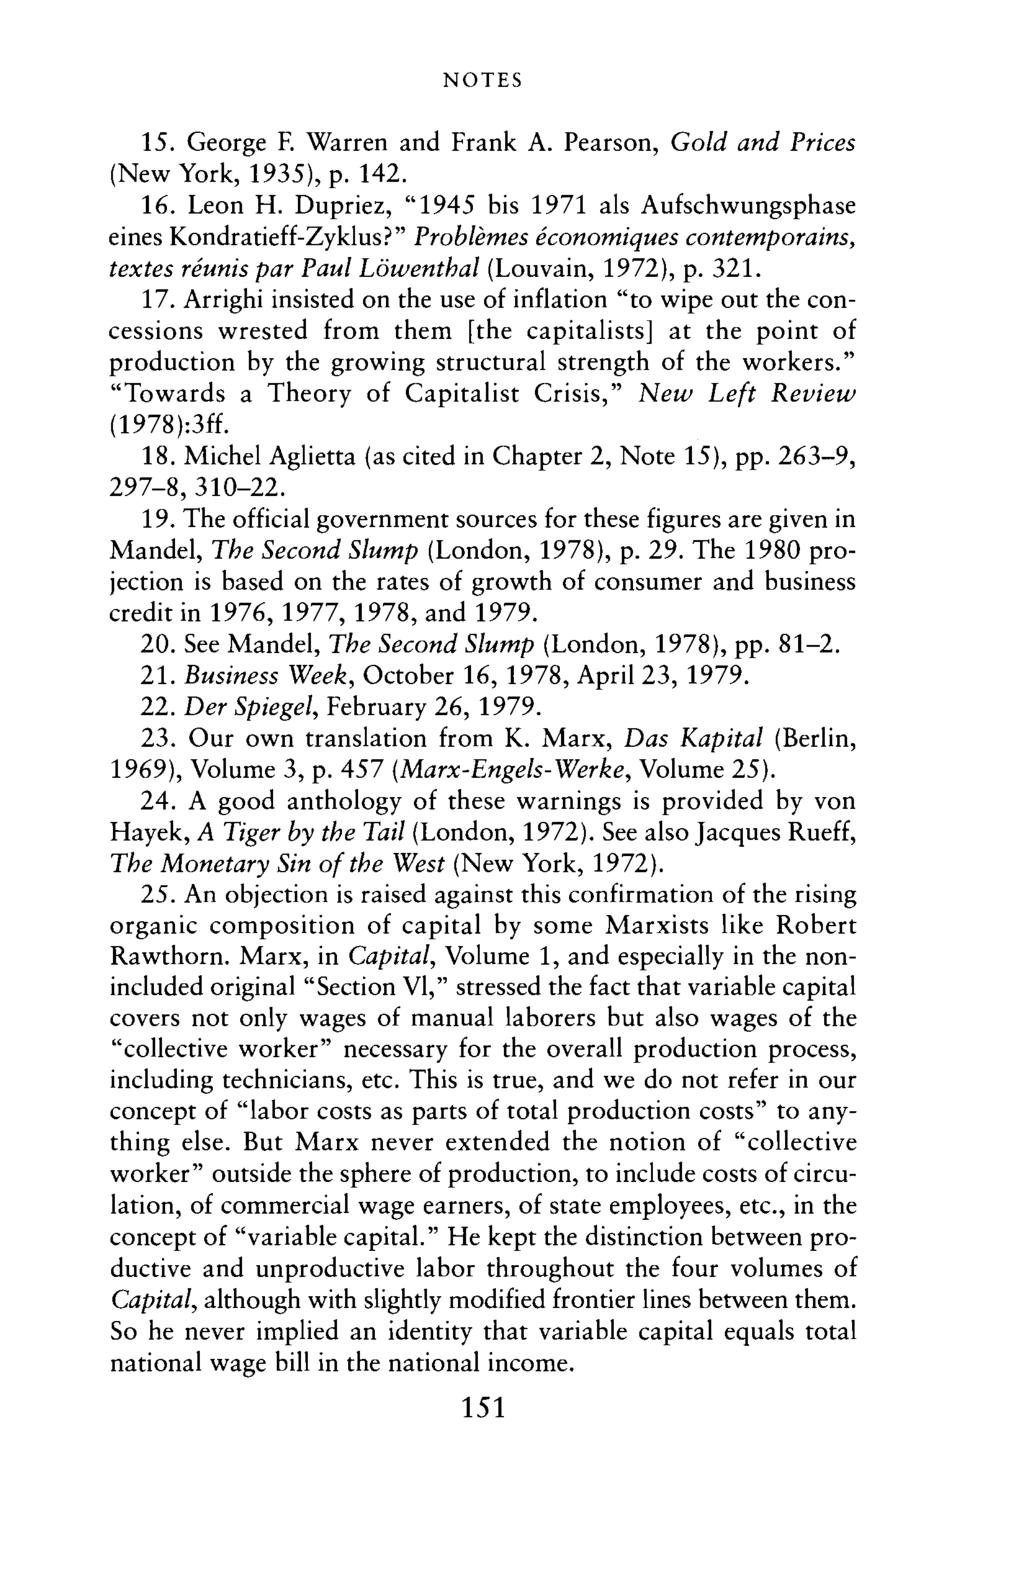 NOTES 15. George F. Warren and Frank A. Pearson, Gold and Prices (New York, 1935), p. 142. 16. Leon H. Dupriez, "1945 his 1971 als Aufschwungsphase eines Kondratieff-Zyklus?